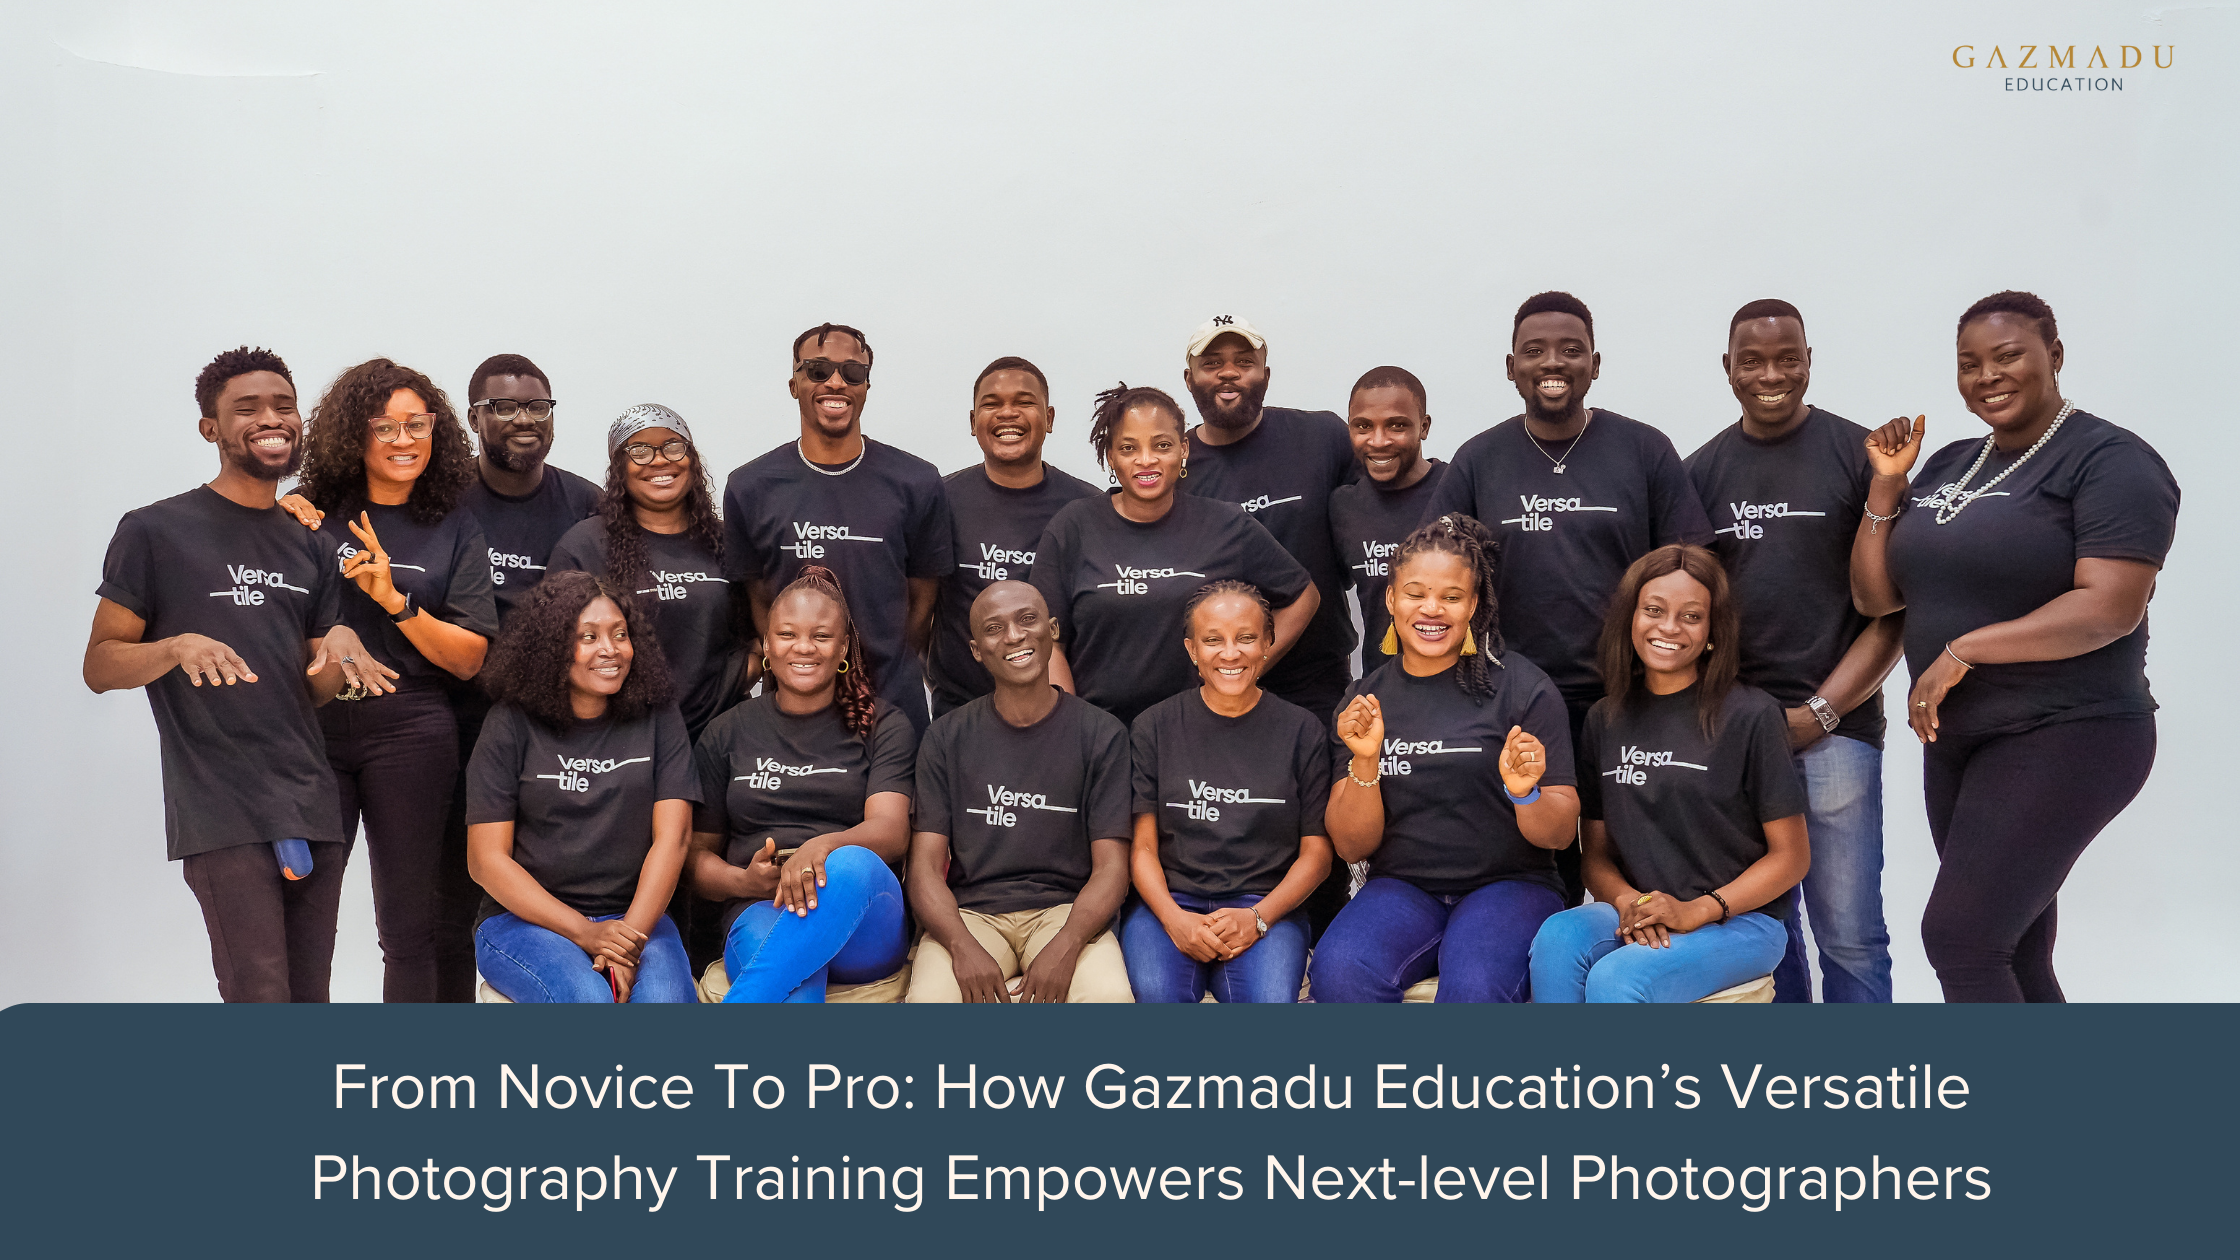 From Novice To Pro: How Gazmadu Education’s Versatile Photography Training Empowers Next-level Photographers